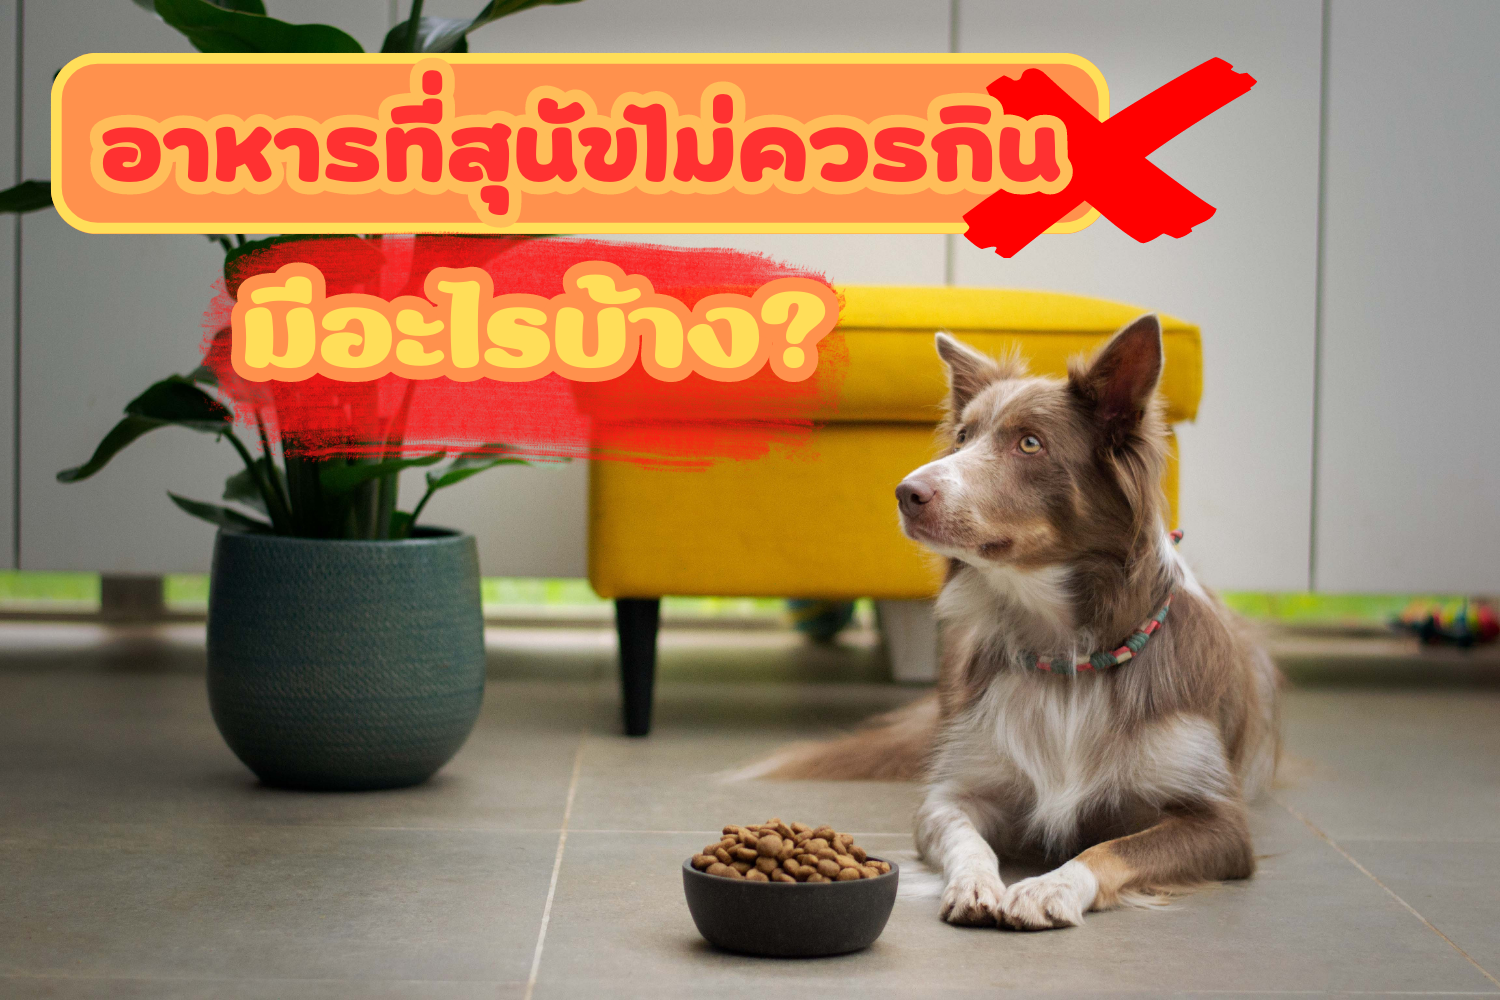 อาหารที่สุนัขไม่ควรกิน มีอะไรบ้าง?